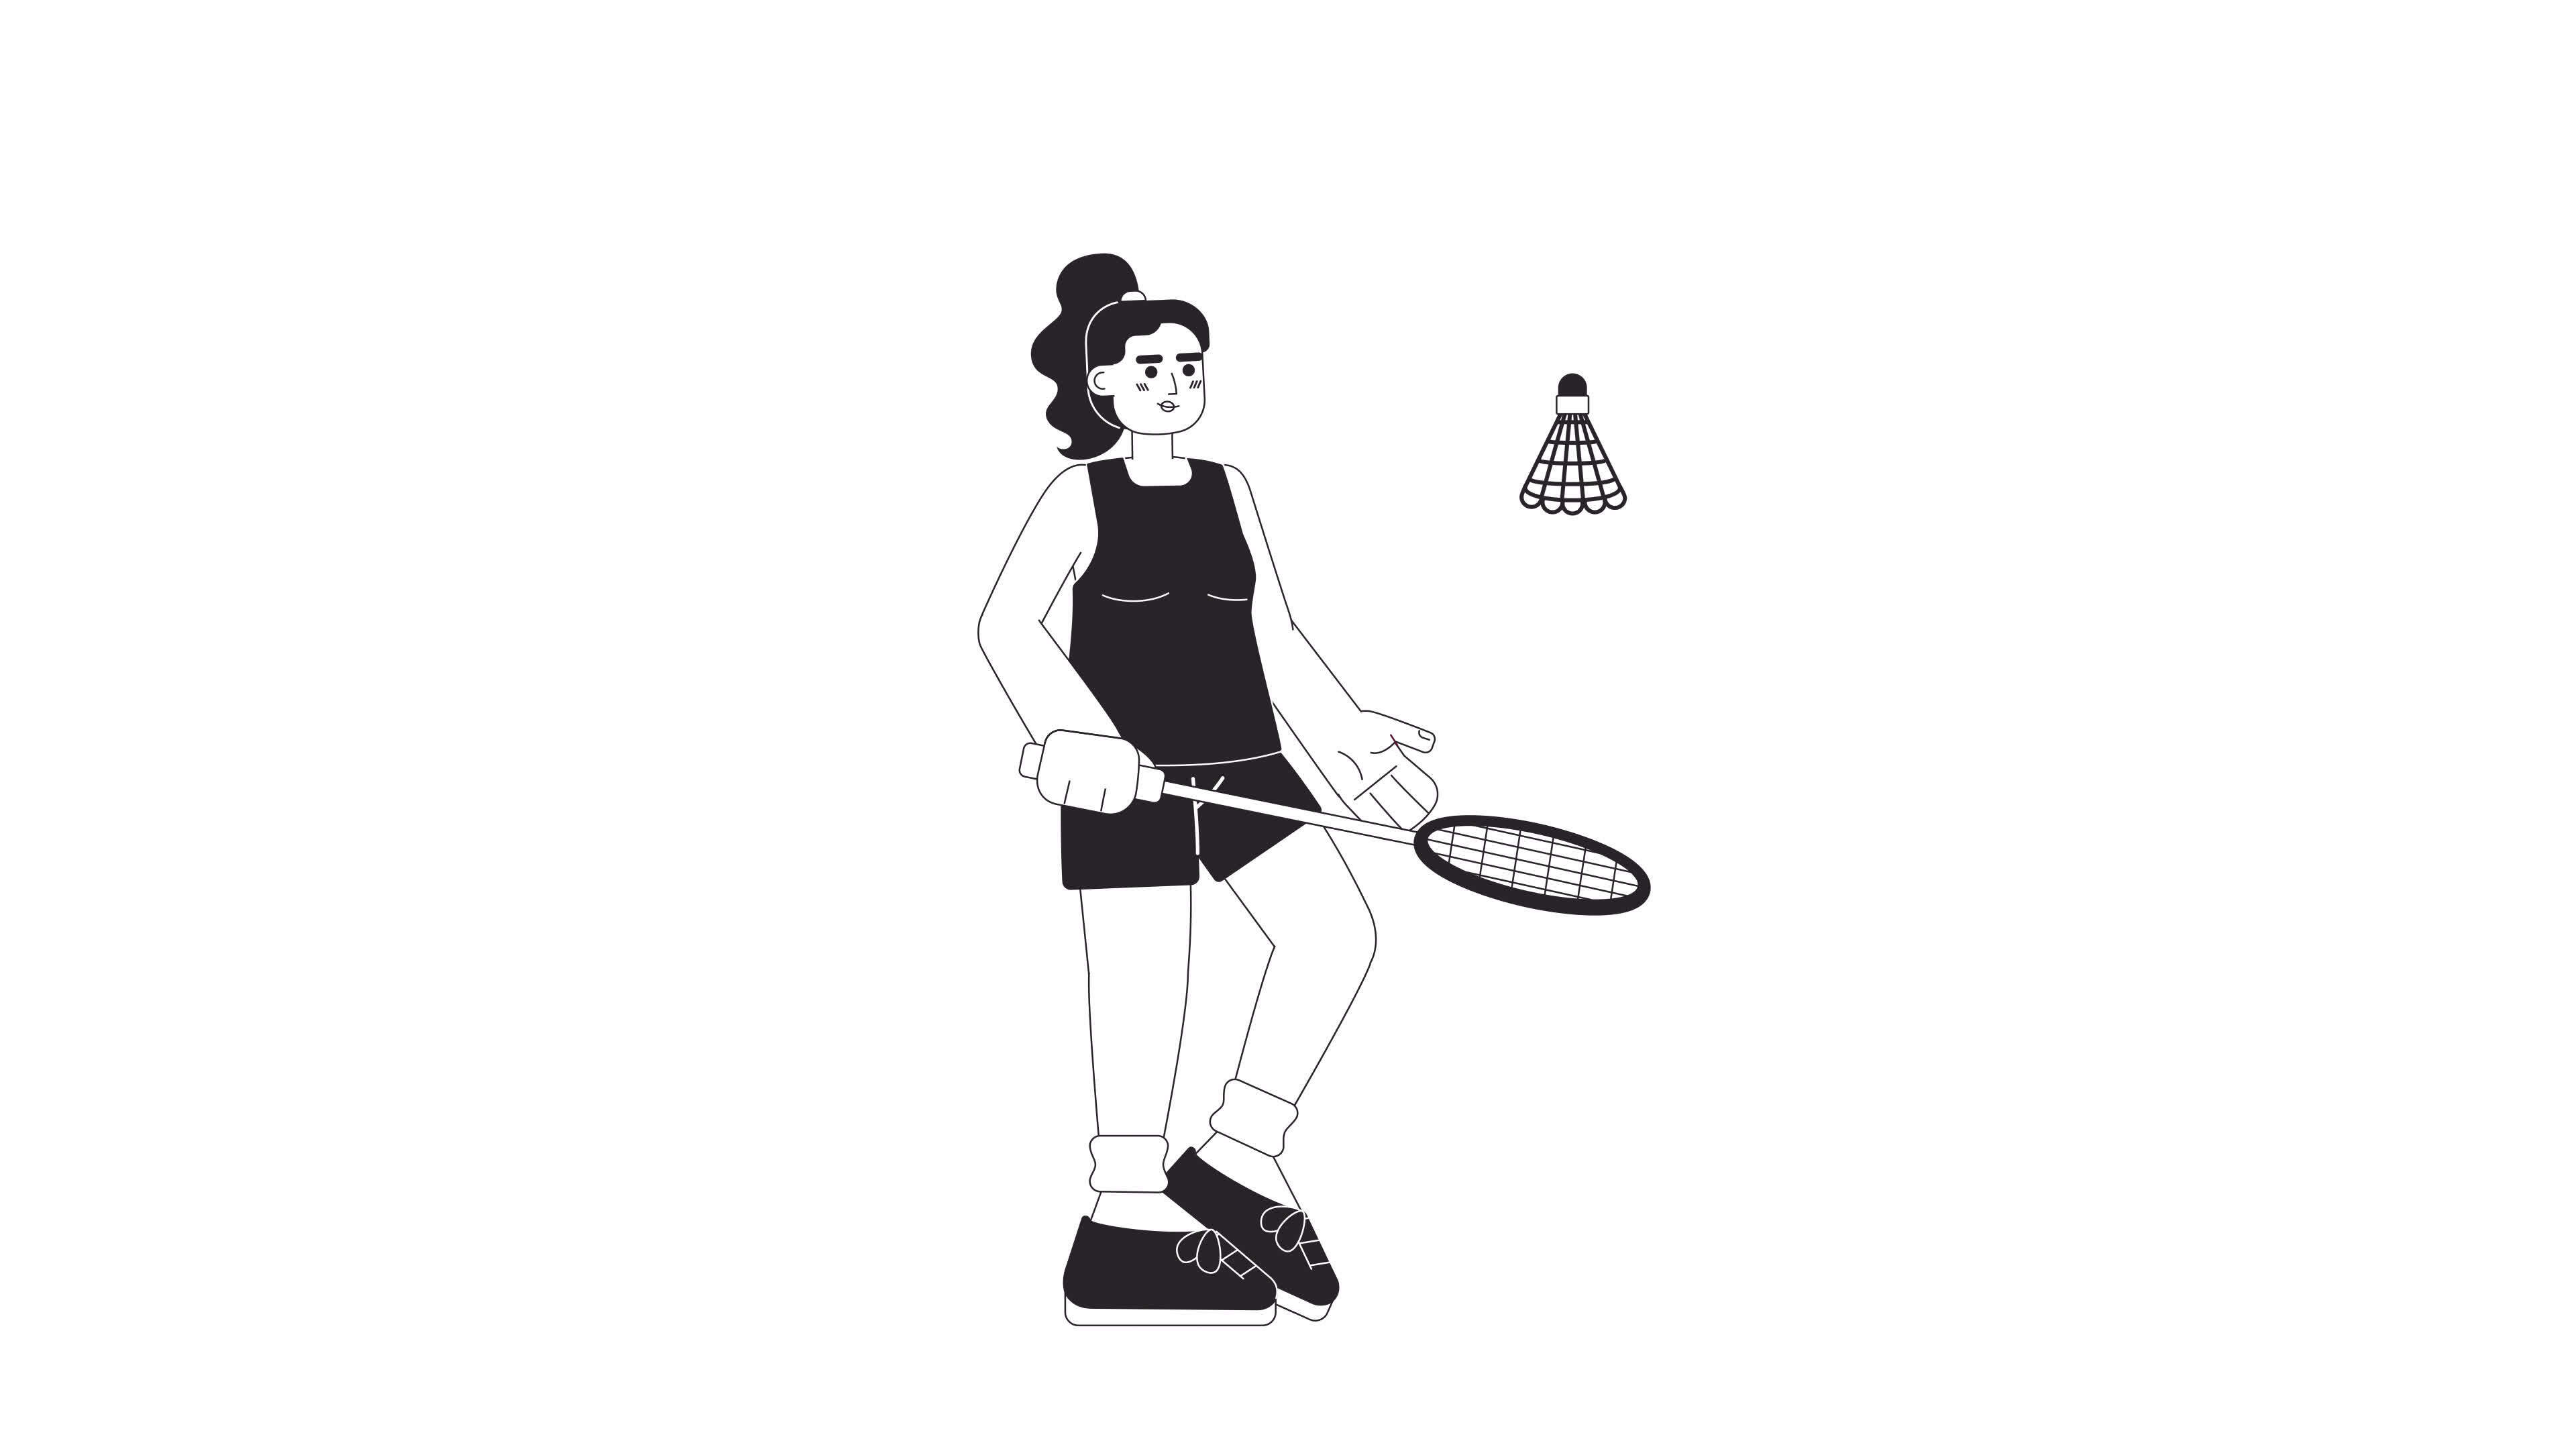 Animated bw badminton player. Female athlete hitting shuttlecock isolated 2D animation